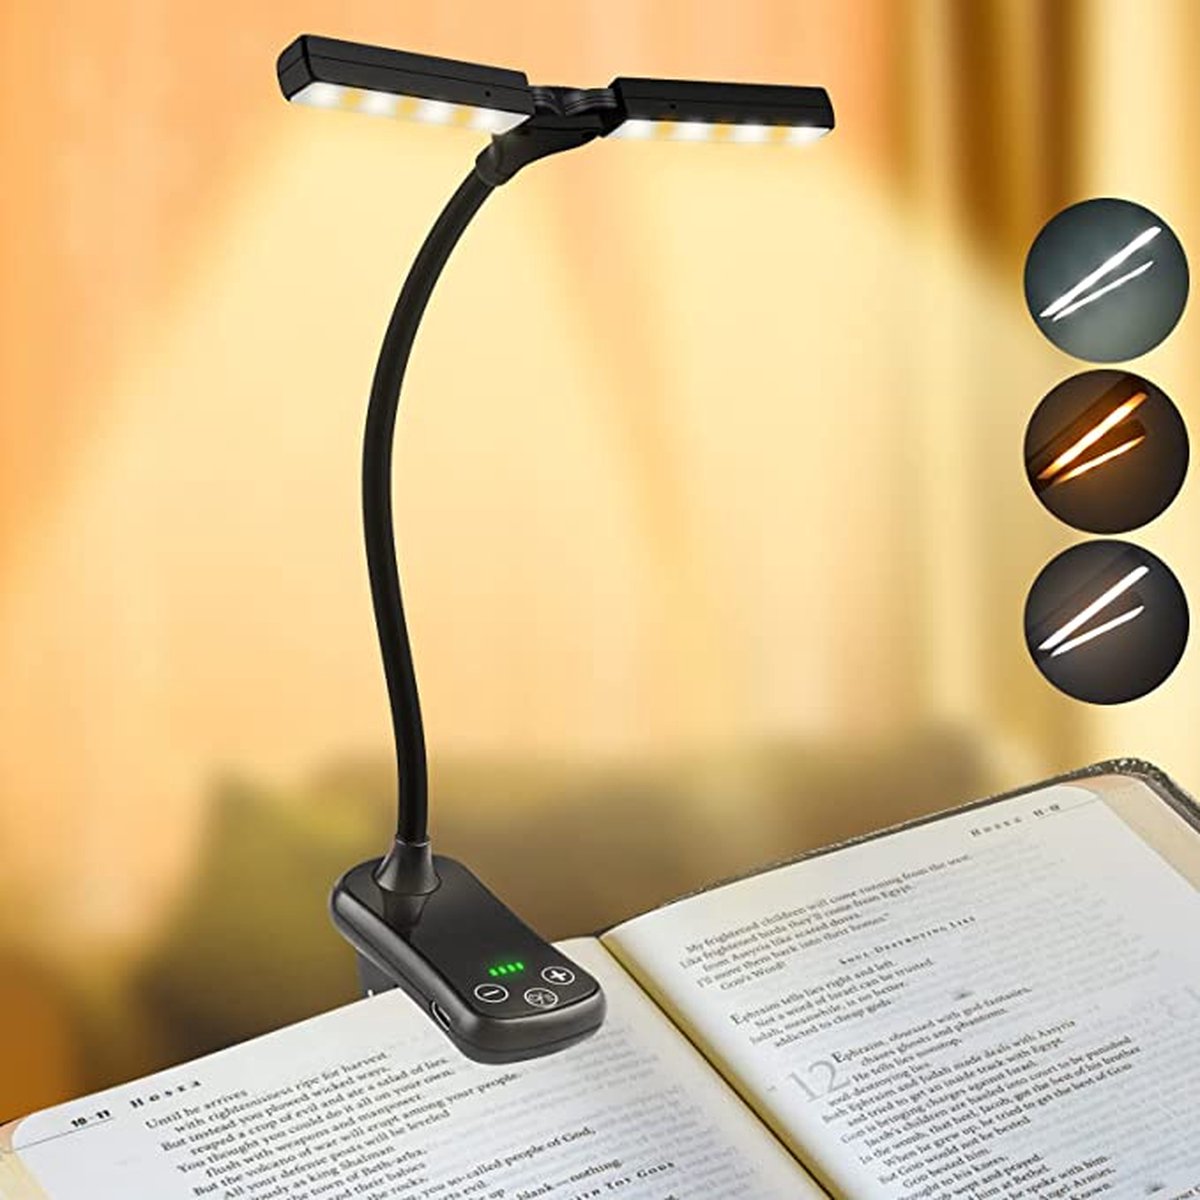 Liseuse de Boek - Liseuse pour livre - Lampe de lecture - LED